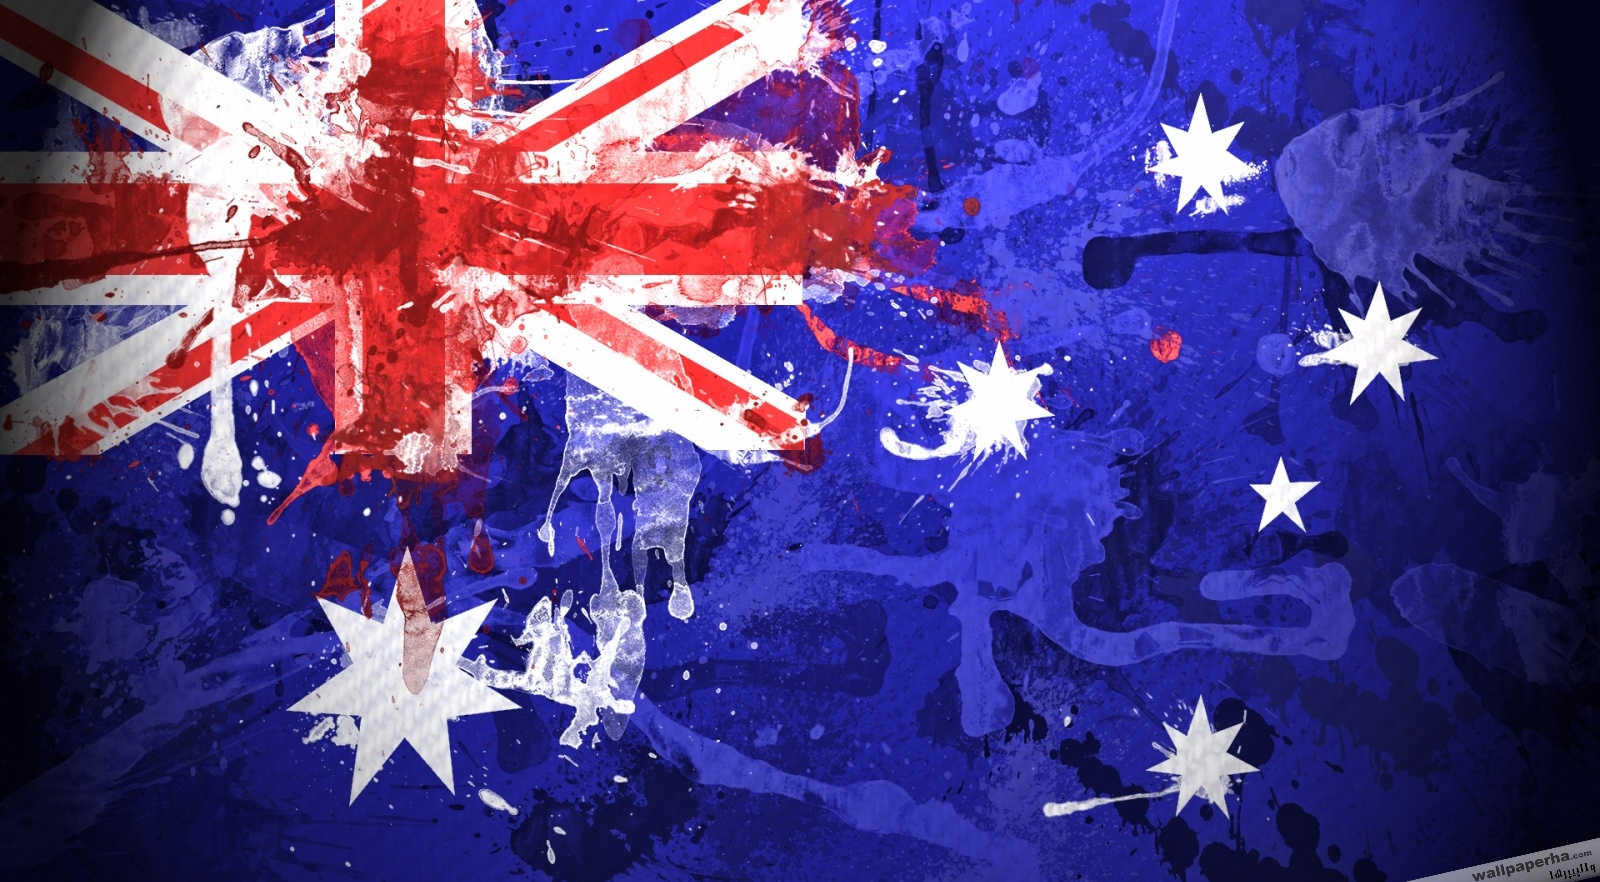 تصویر پرچم کشور استرالیا